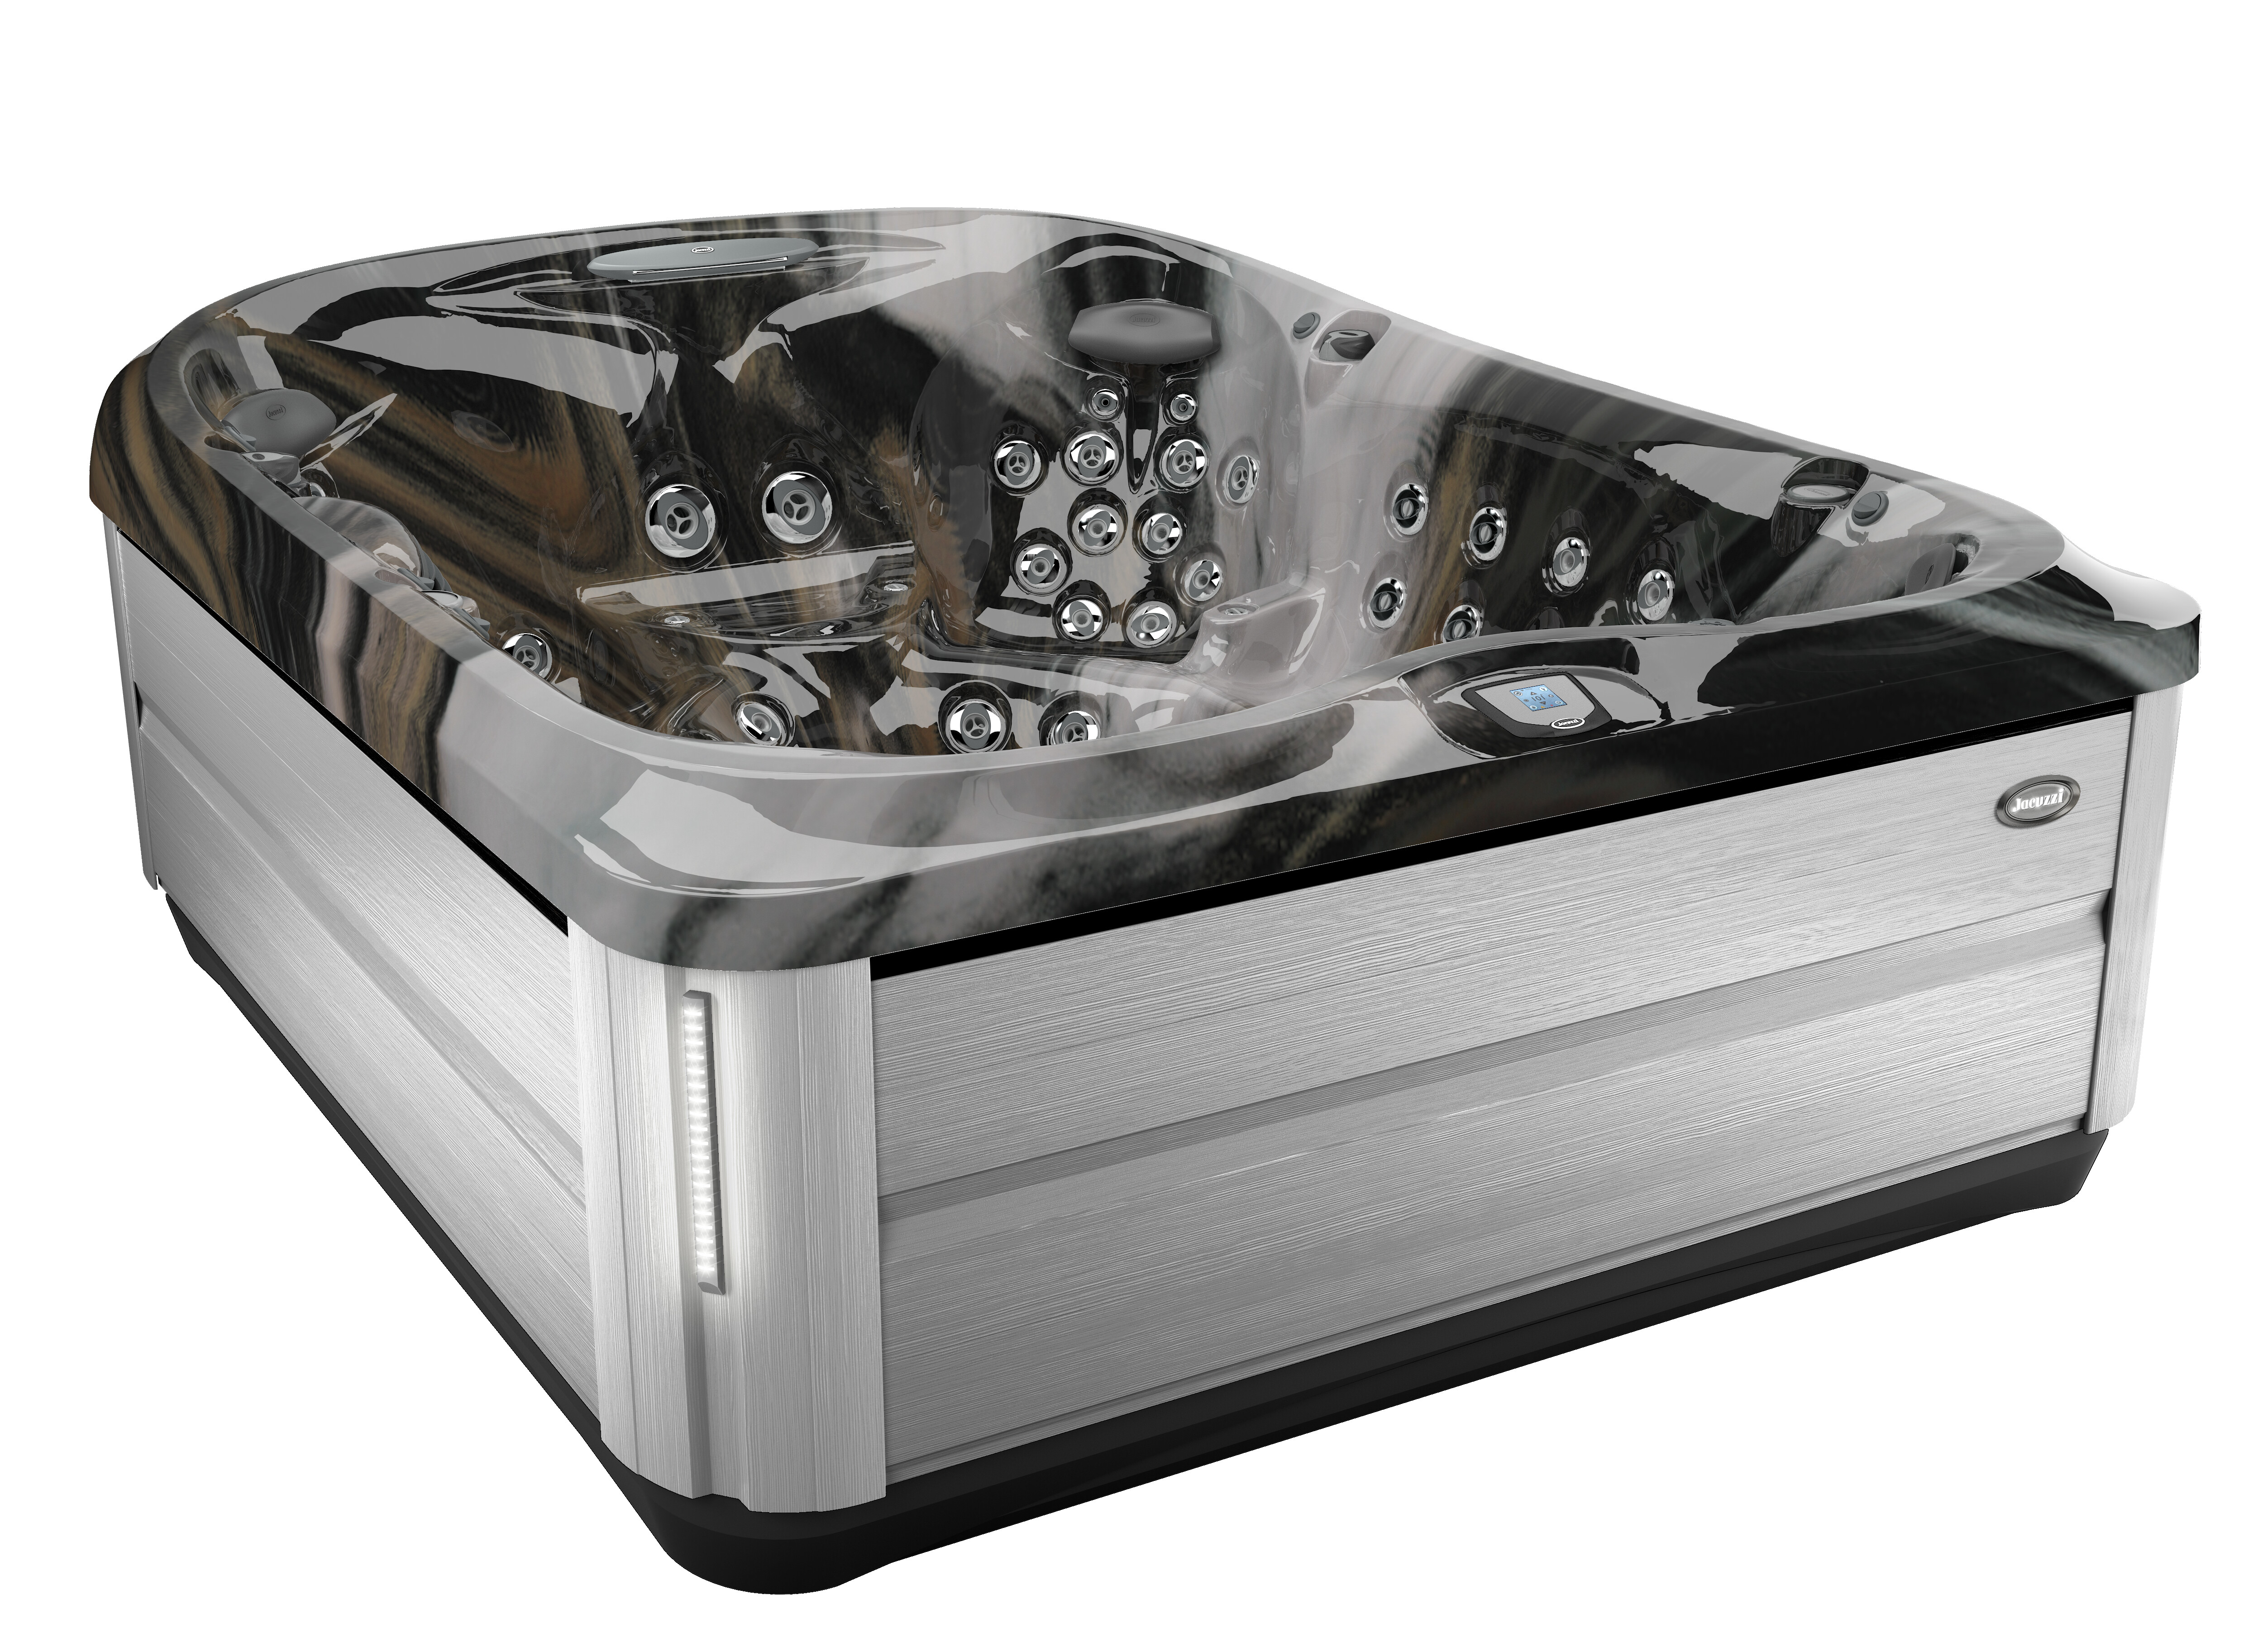 J-495™ Spacious Designer Entertainer's Hot Tub Designer Hot Tub